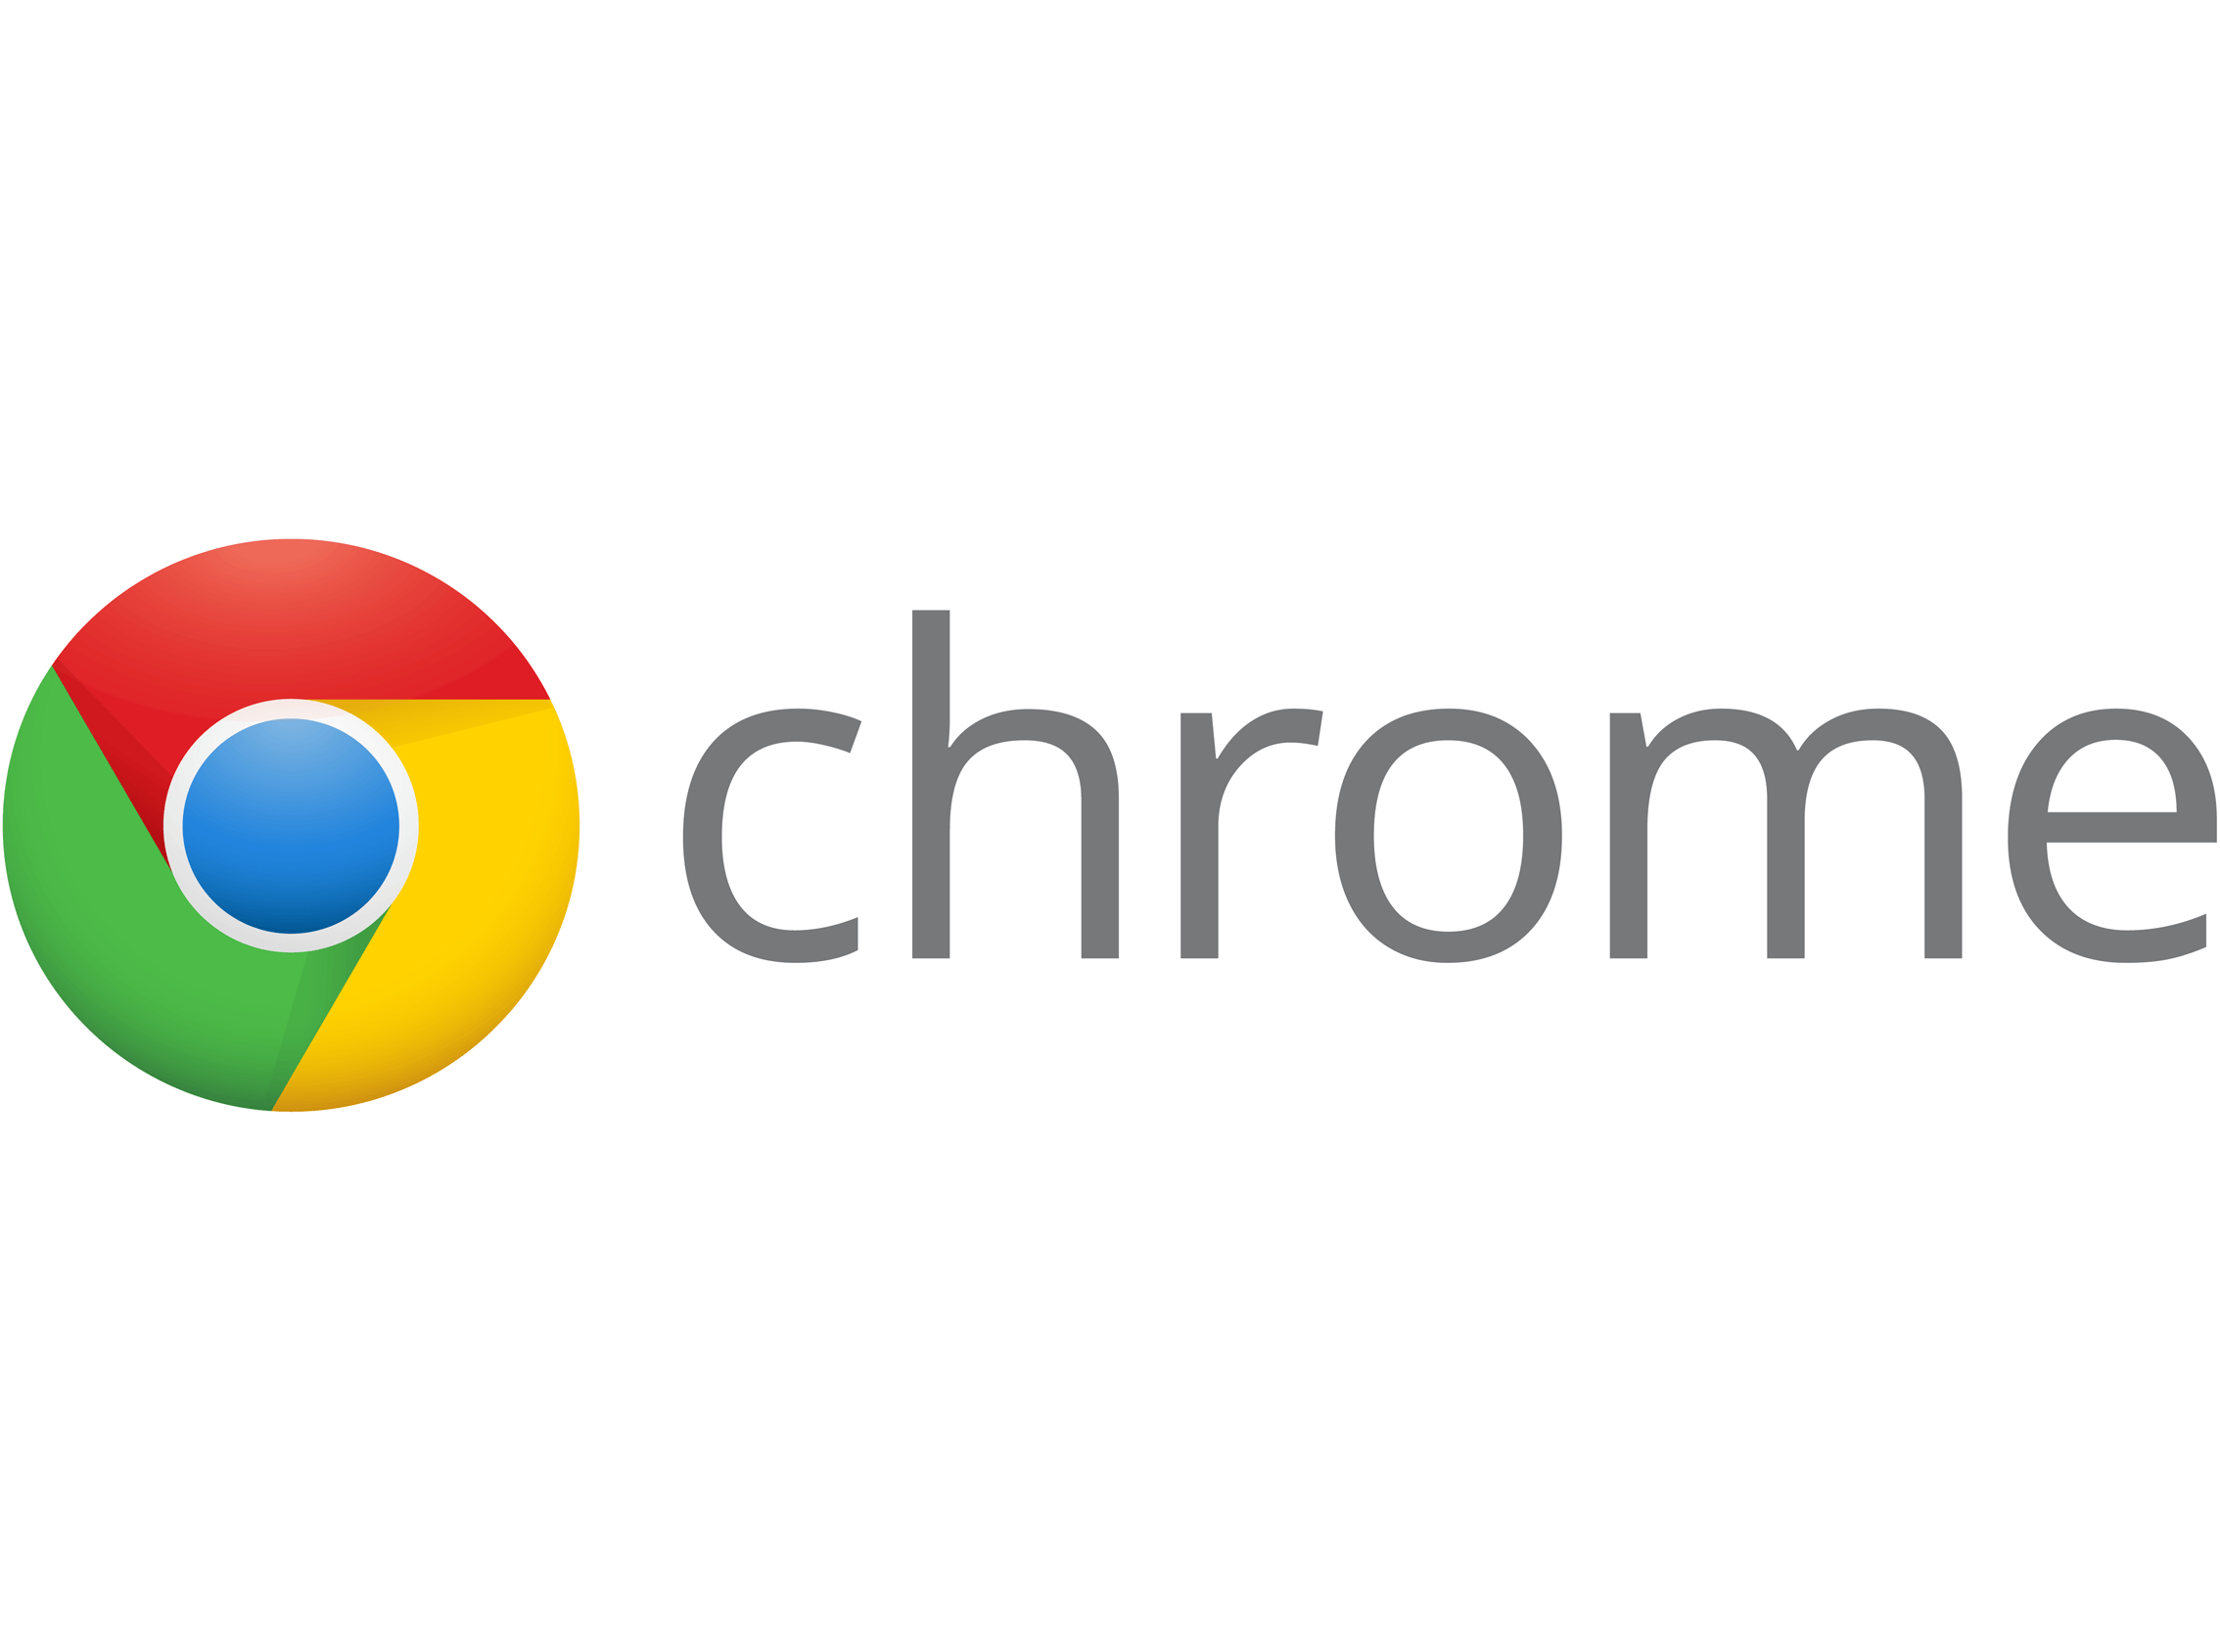 Google Chrome Logo - Chrome logo